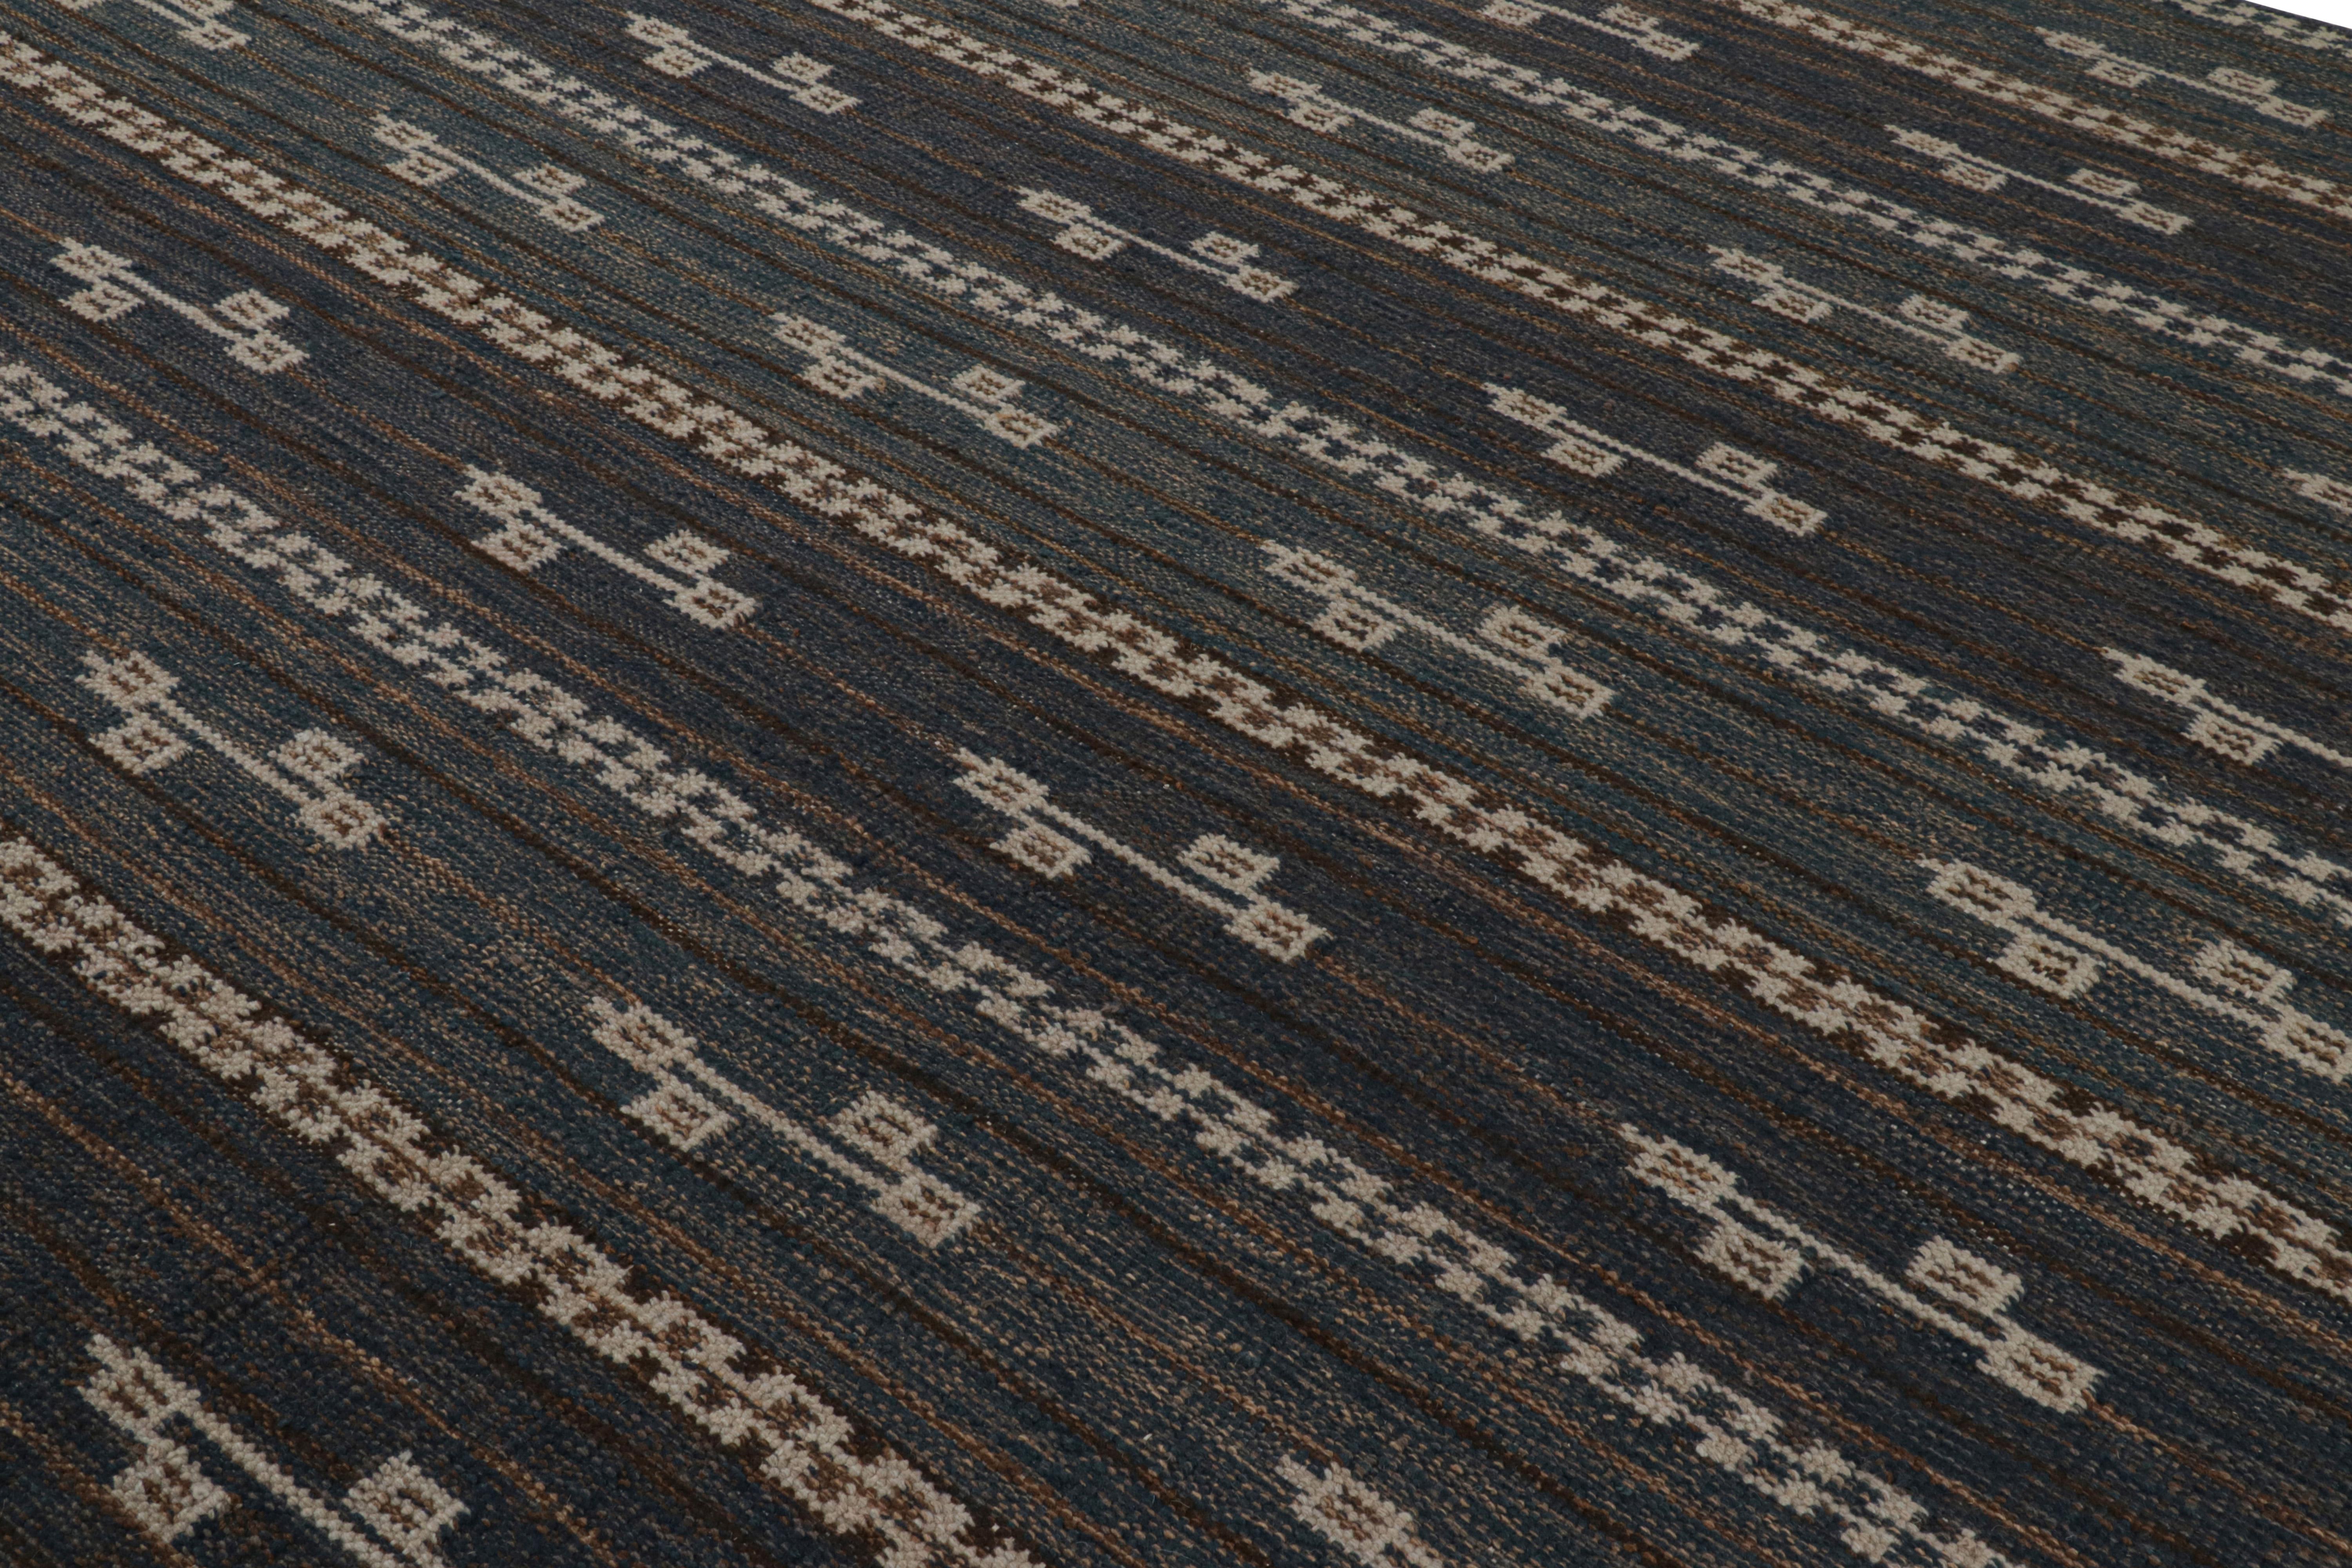 Ce tapis 9x12 est un nouvel ajout audacieux à la Collection S &New de Rug & Kilim. Tissé à la main dans un tissu plat en laine avec des fils naturels non teints, son design est une nouvelle édition de notre série 